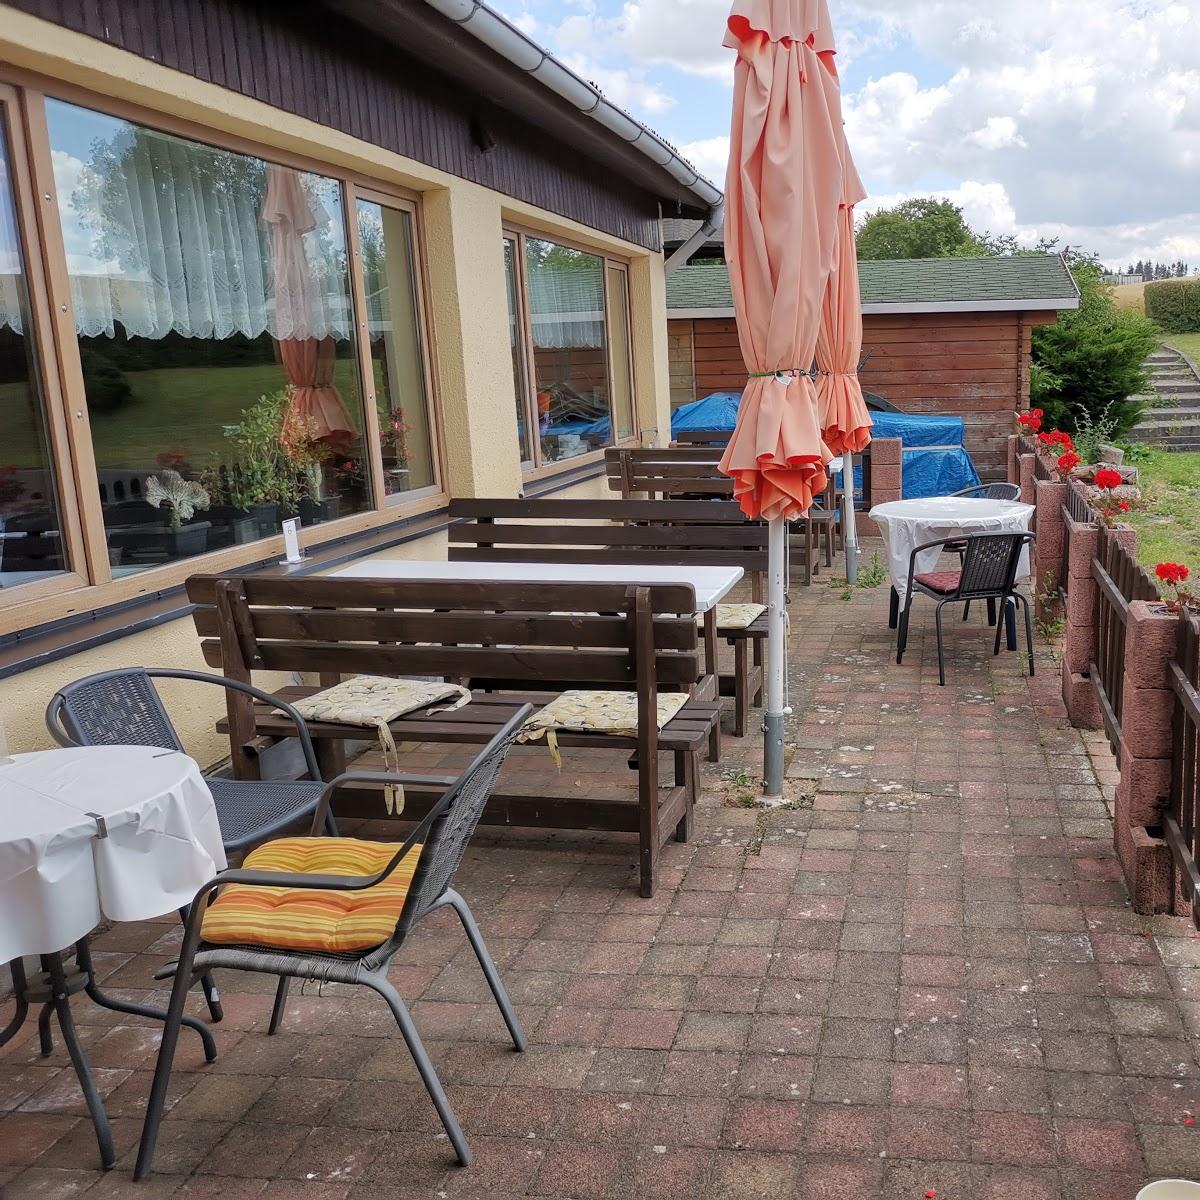 Restaurant "Zum Harzer Hexenteufel" in Südharz